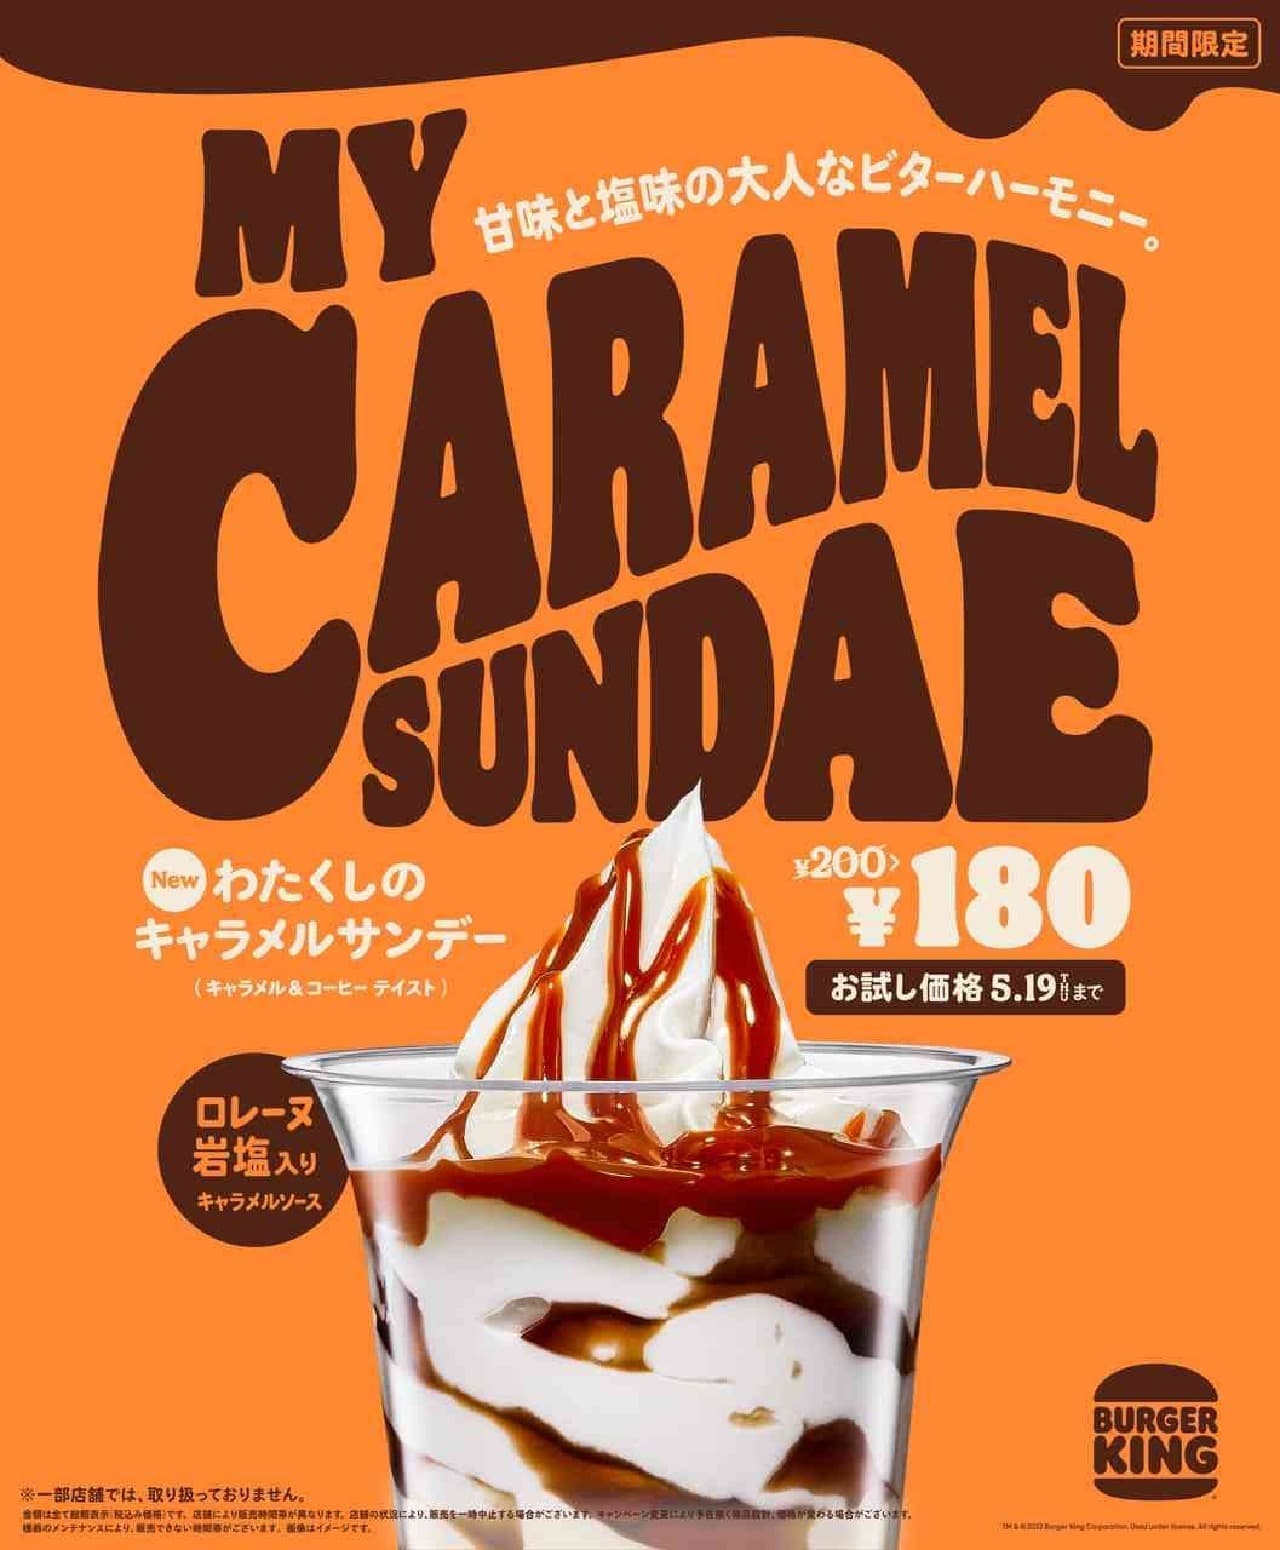 Watashi no Caramel Sundae (Caramel & Coffee Taste)